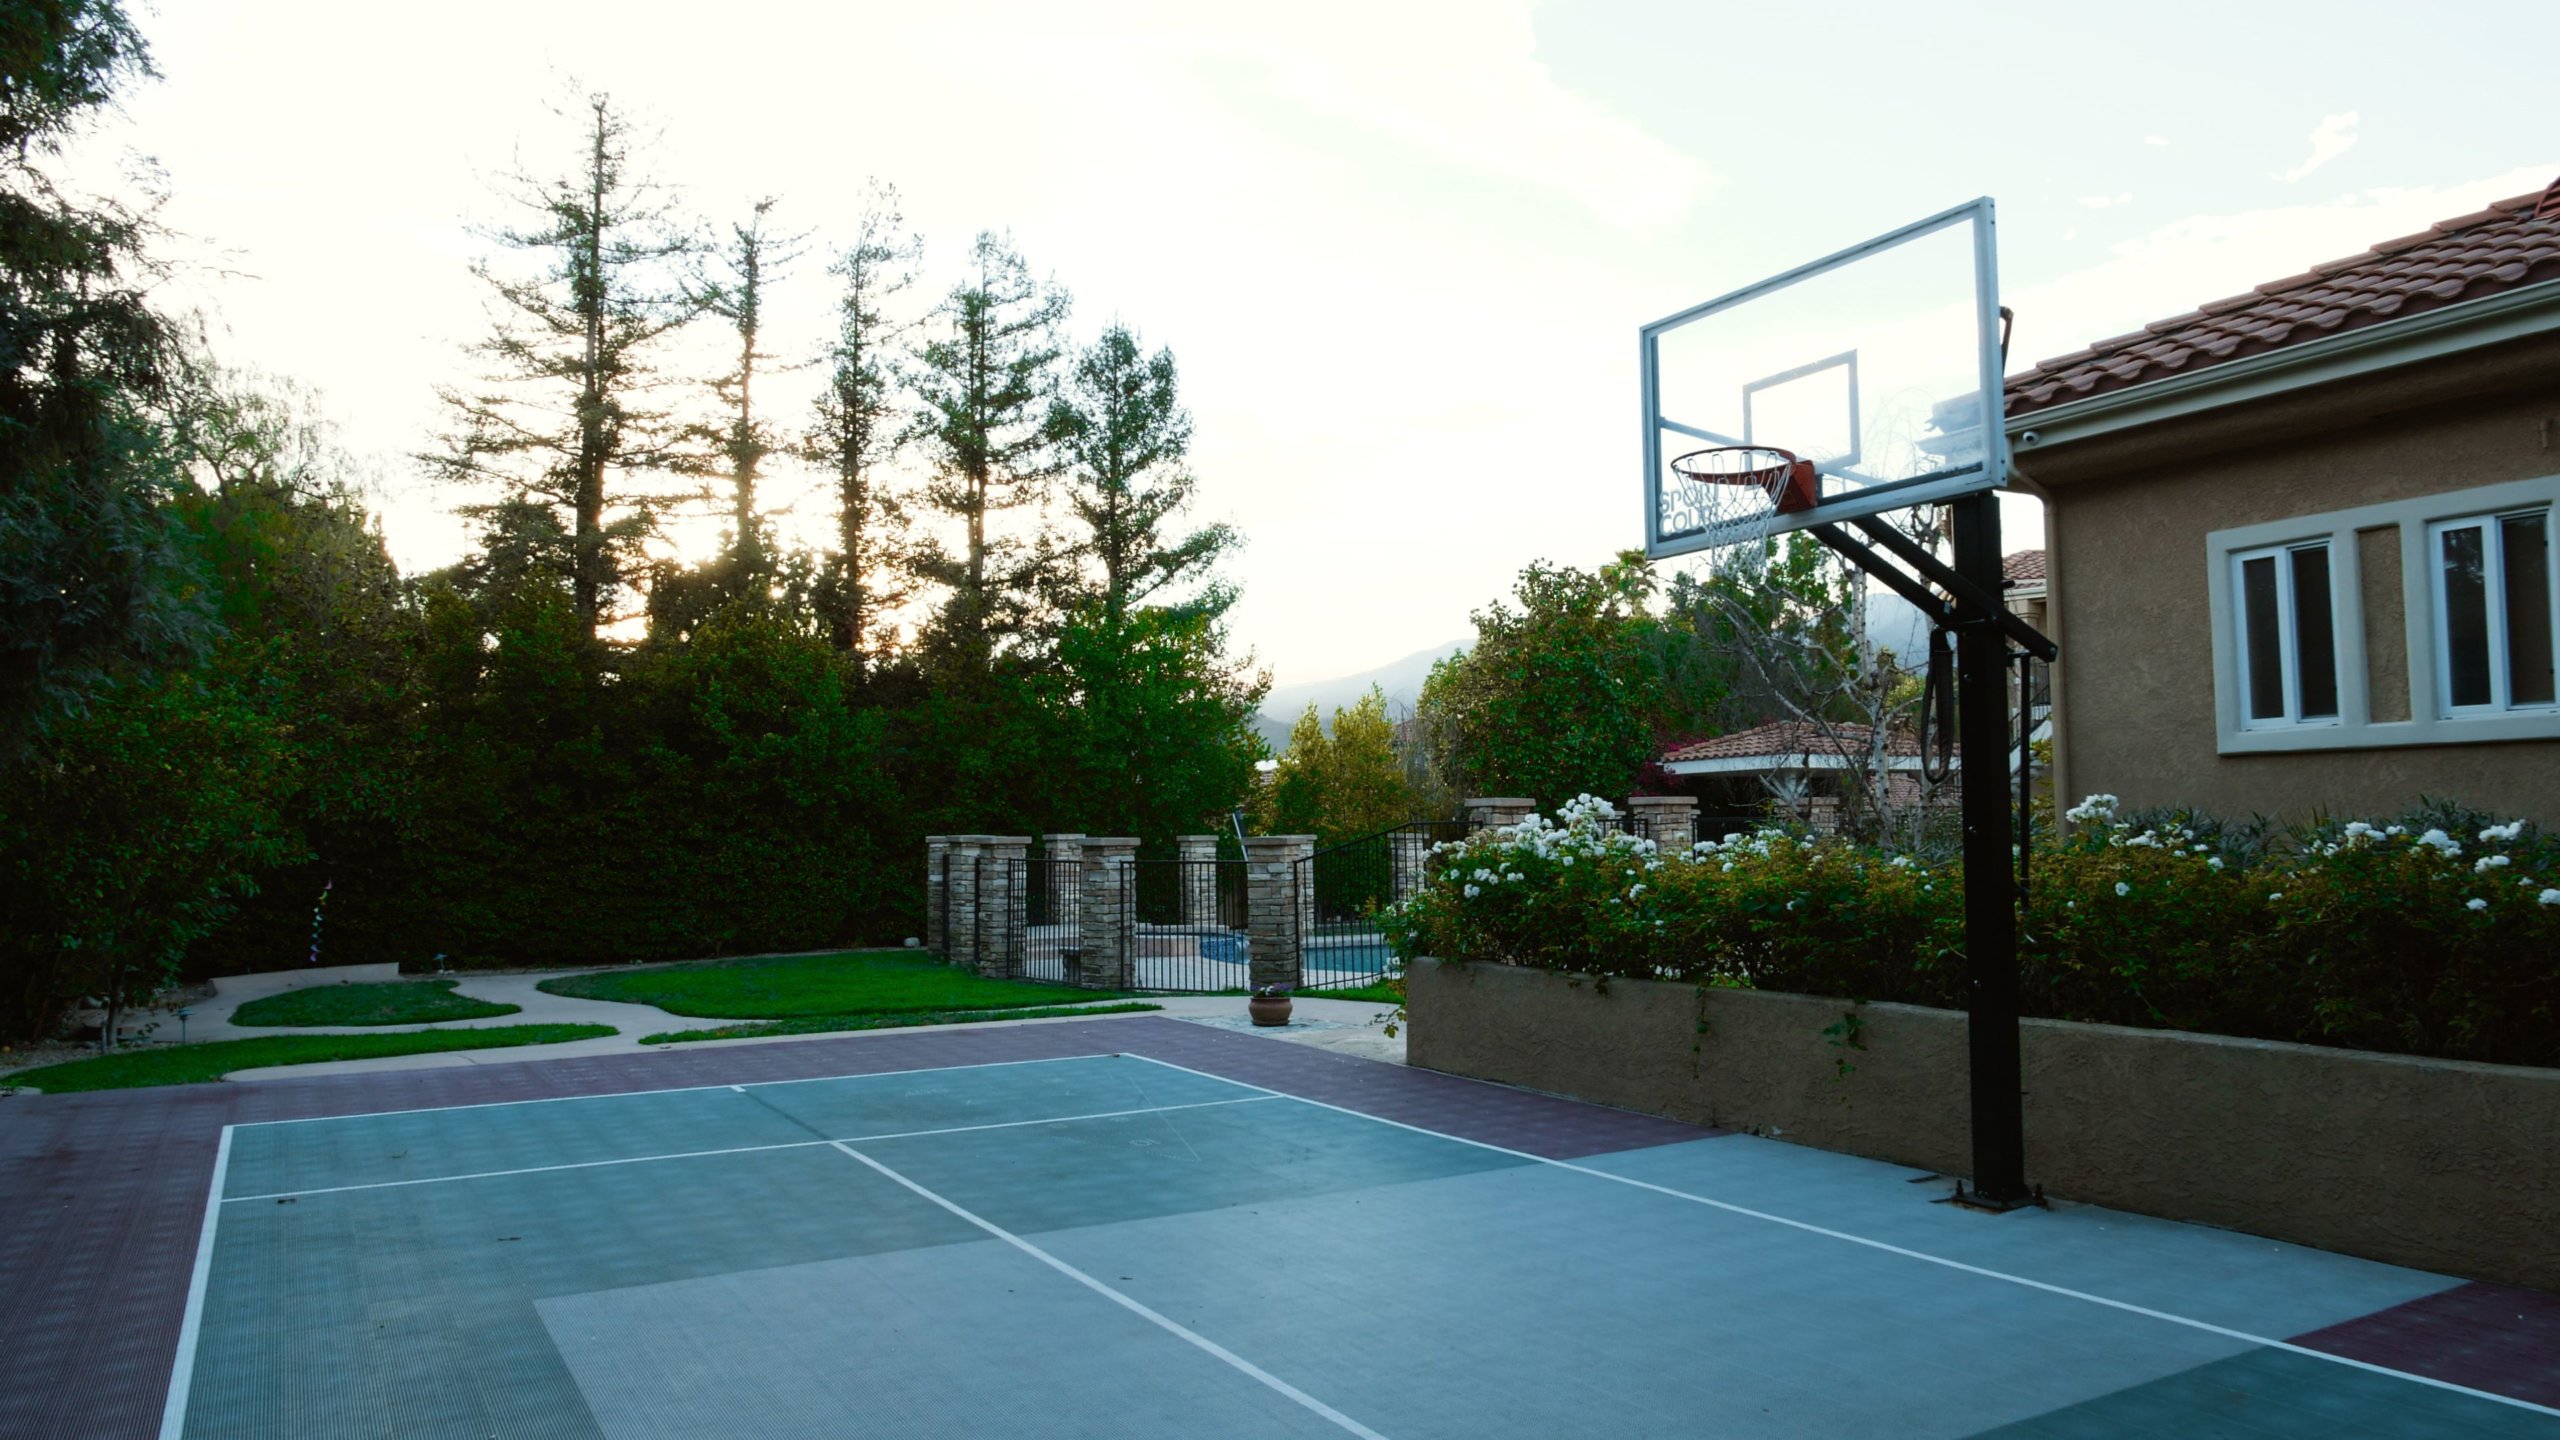 Basketball Yard